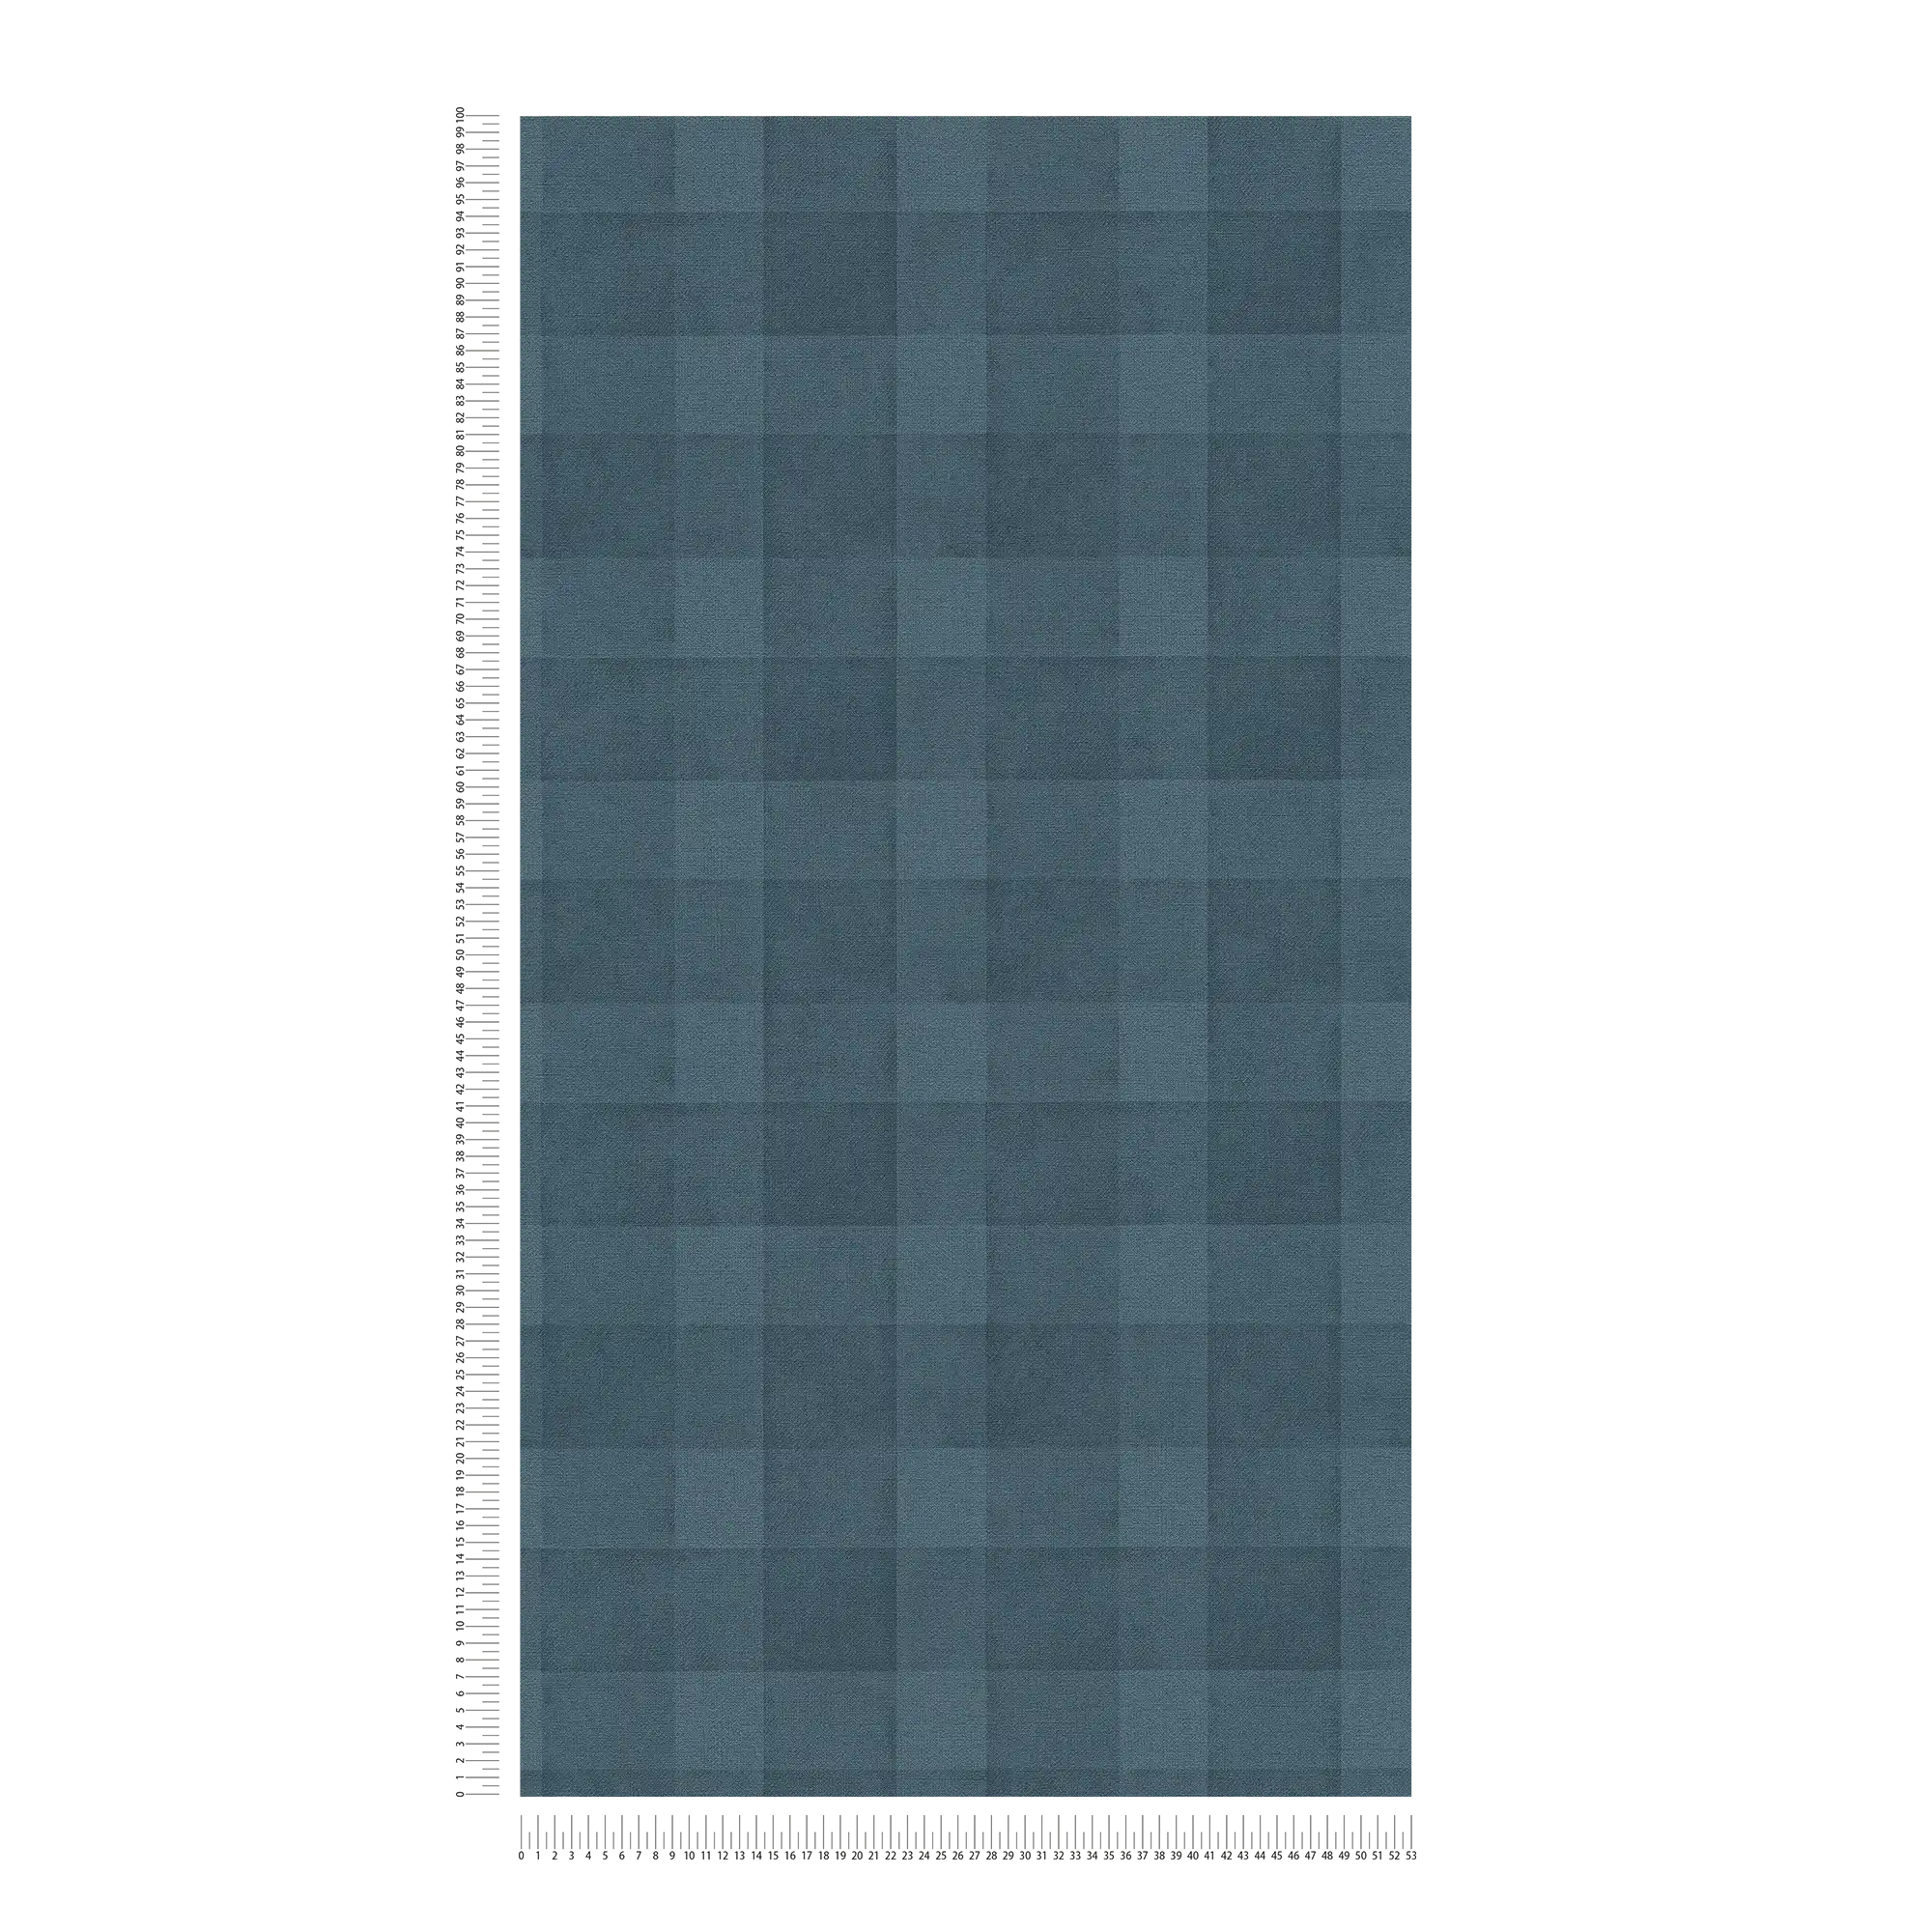             PVC-vrij behang met grafisch ruitpatroon - blauw
        